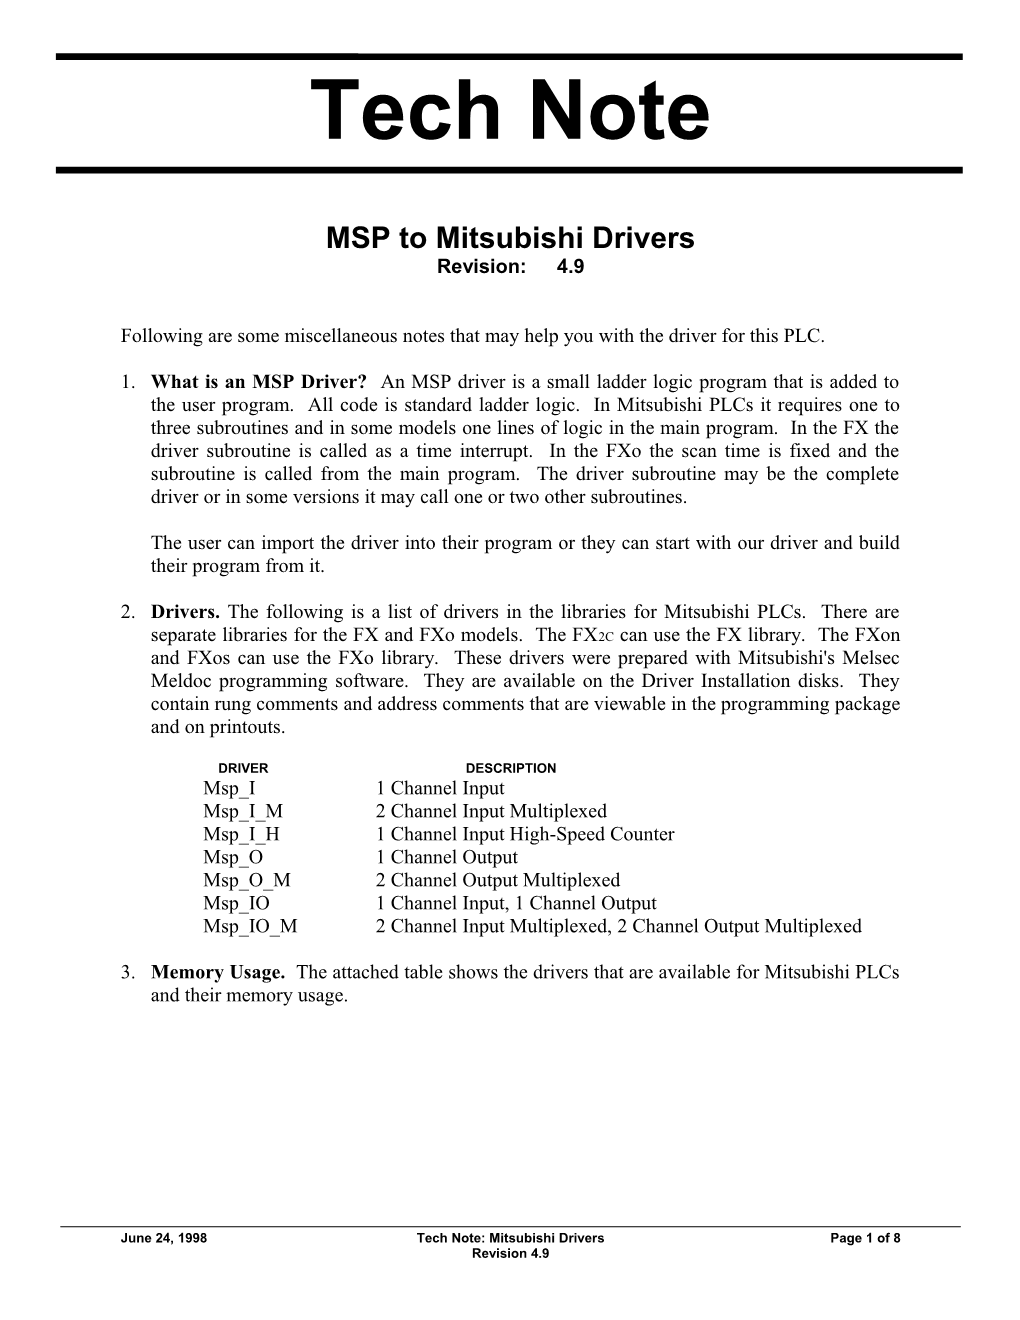 MSP to Mitsubishi Drivers